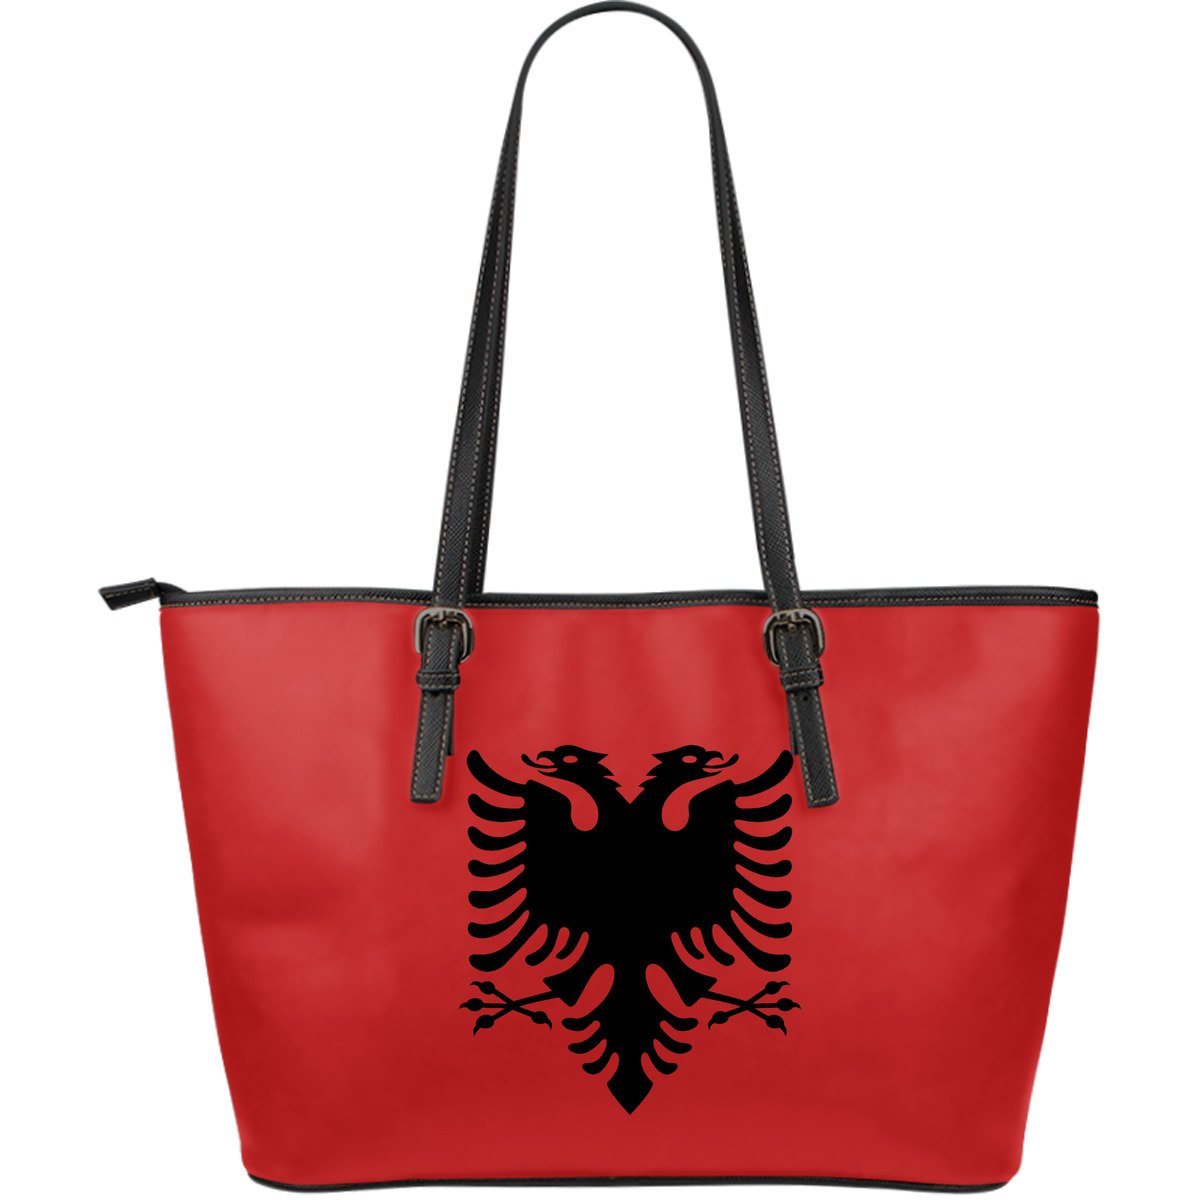 albania-large-leather-tote-bag